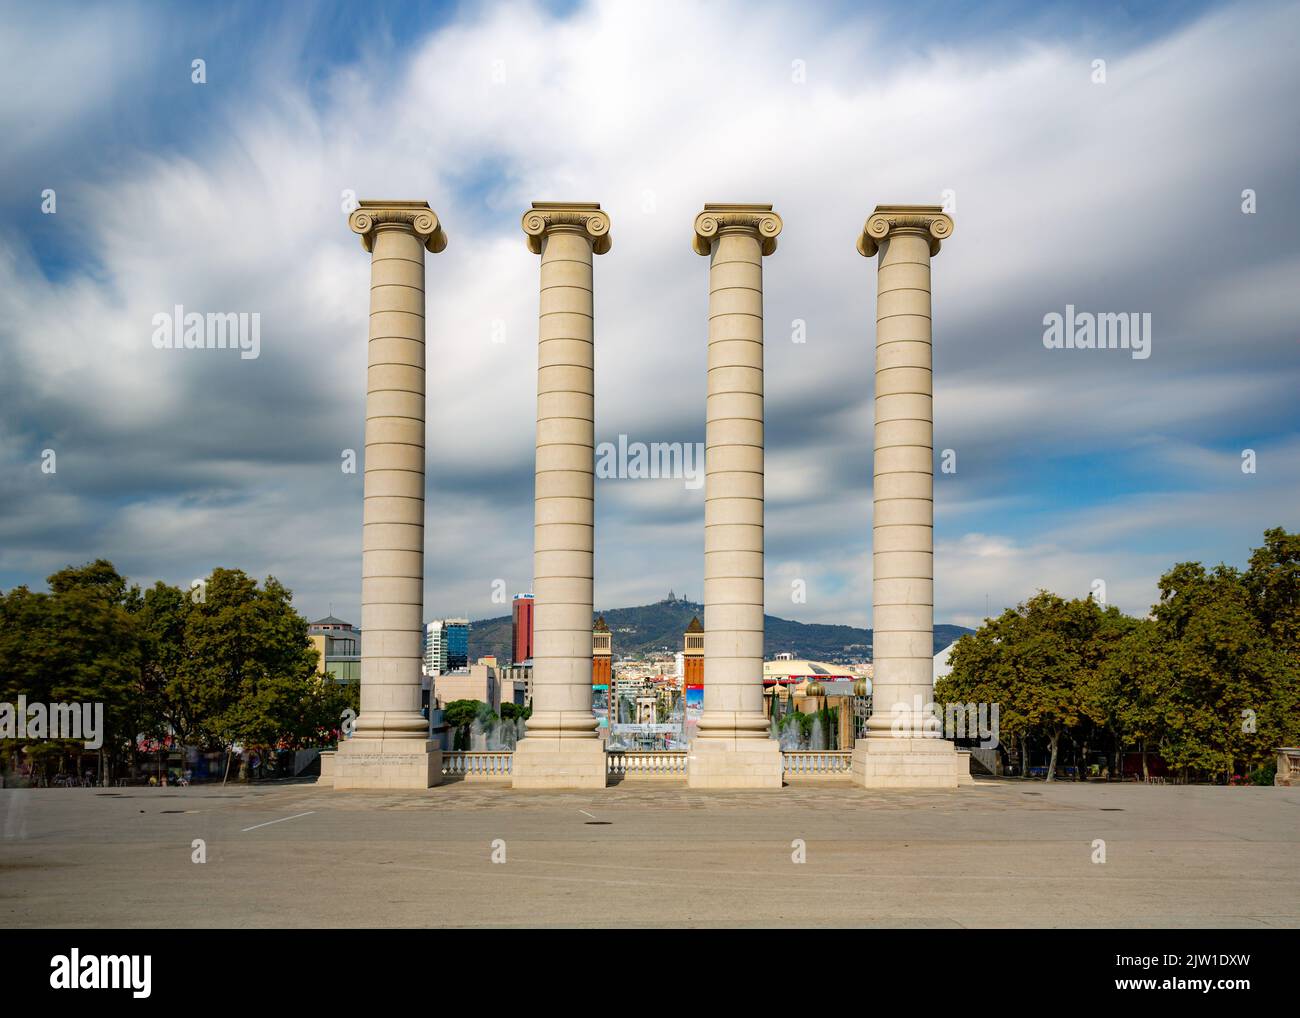 La scultura a quattro colonne a Barcellona, Spagna sotto la luce del sole con cielo nuvoloso sullo sfondo Foto Stock